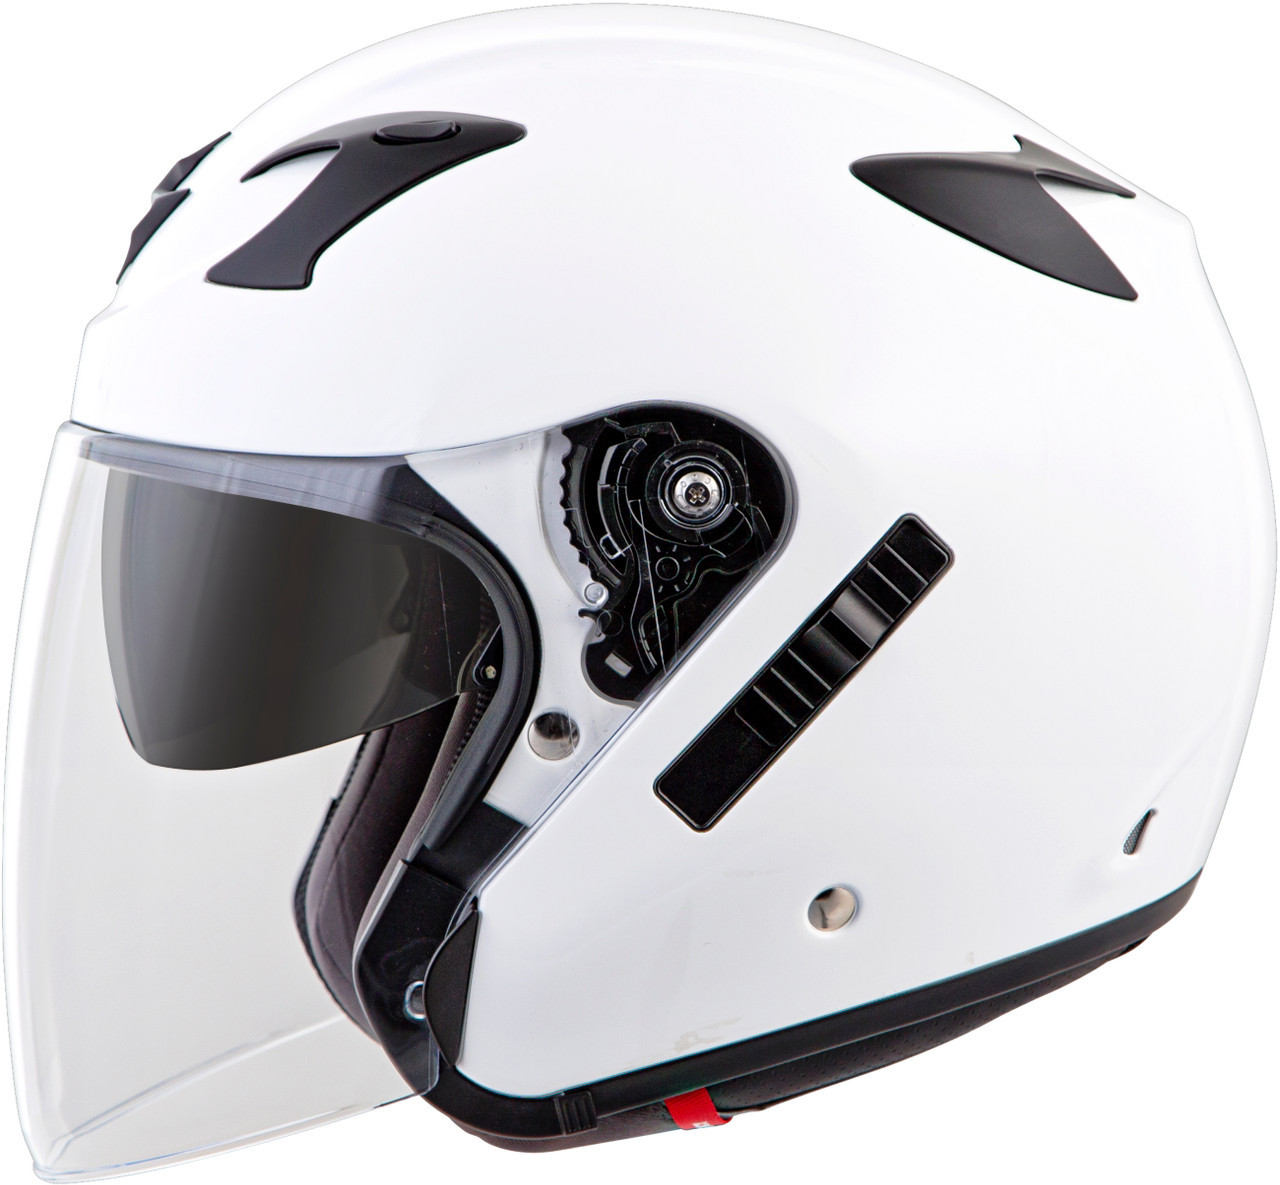 Exo-ct220 Open-face Helmet Neon Xs